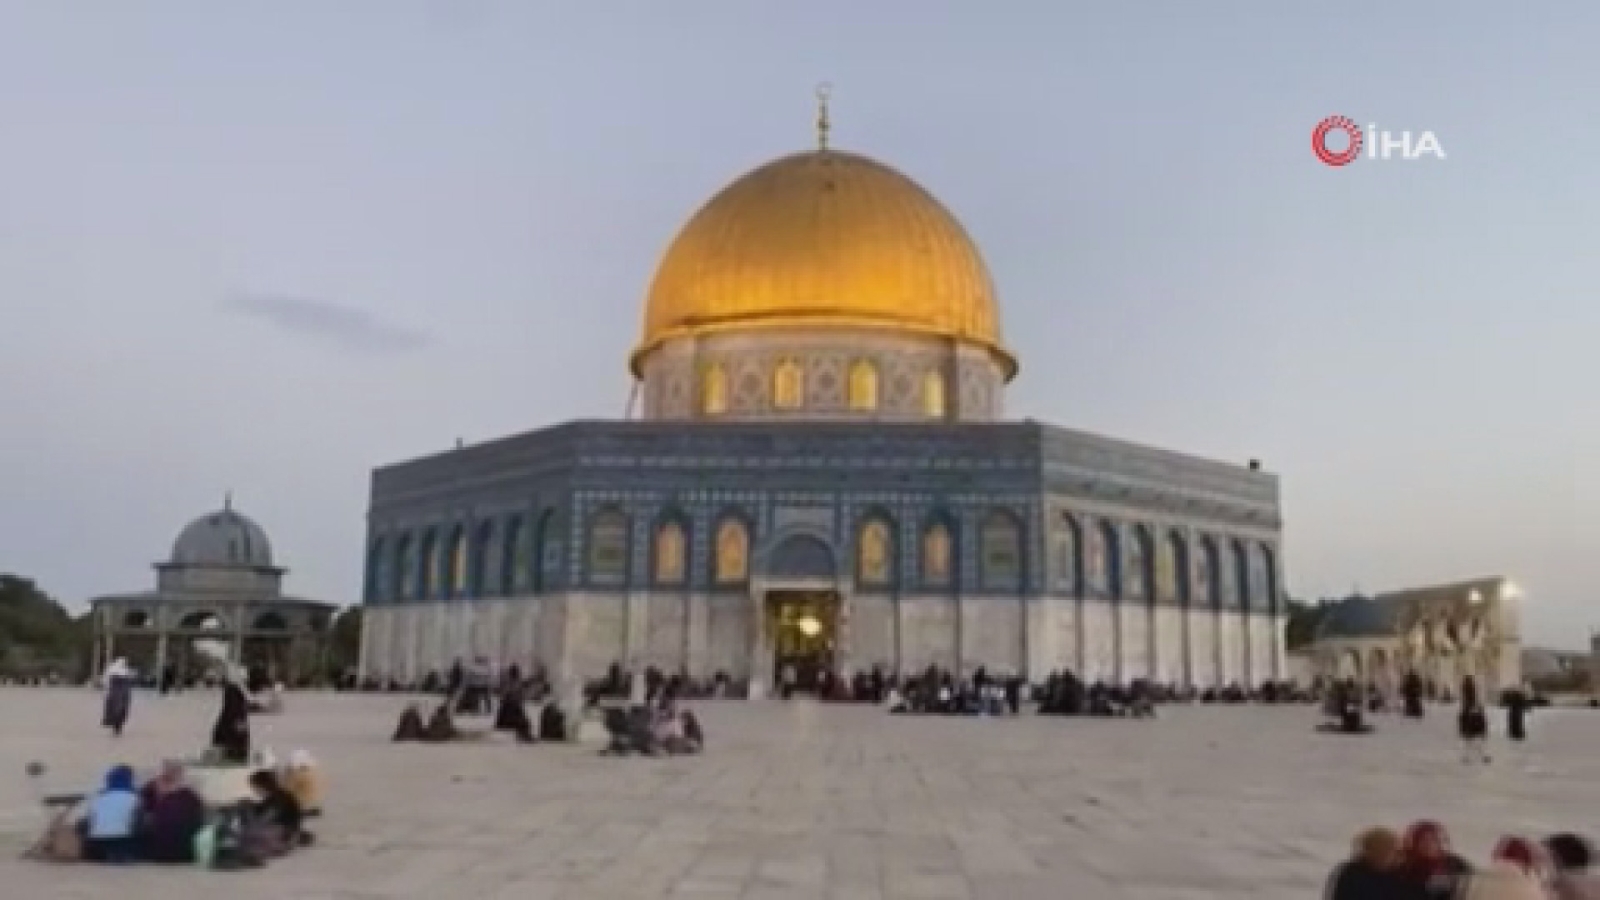 Kudüs halkı Mescid-i Aksa avlusunda iftar açtı